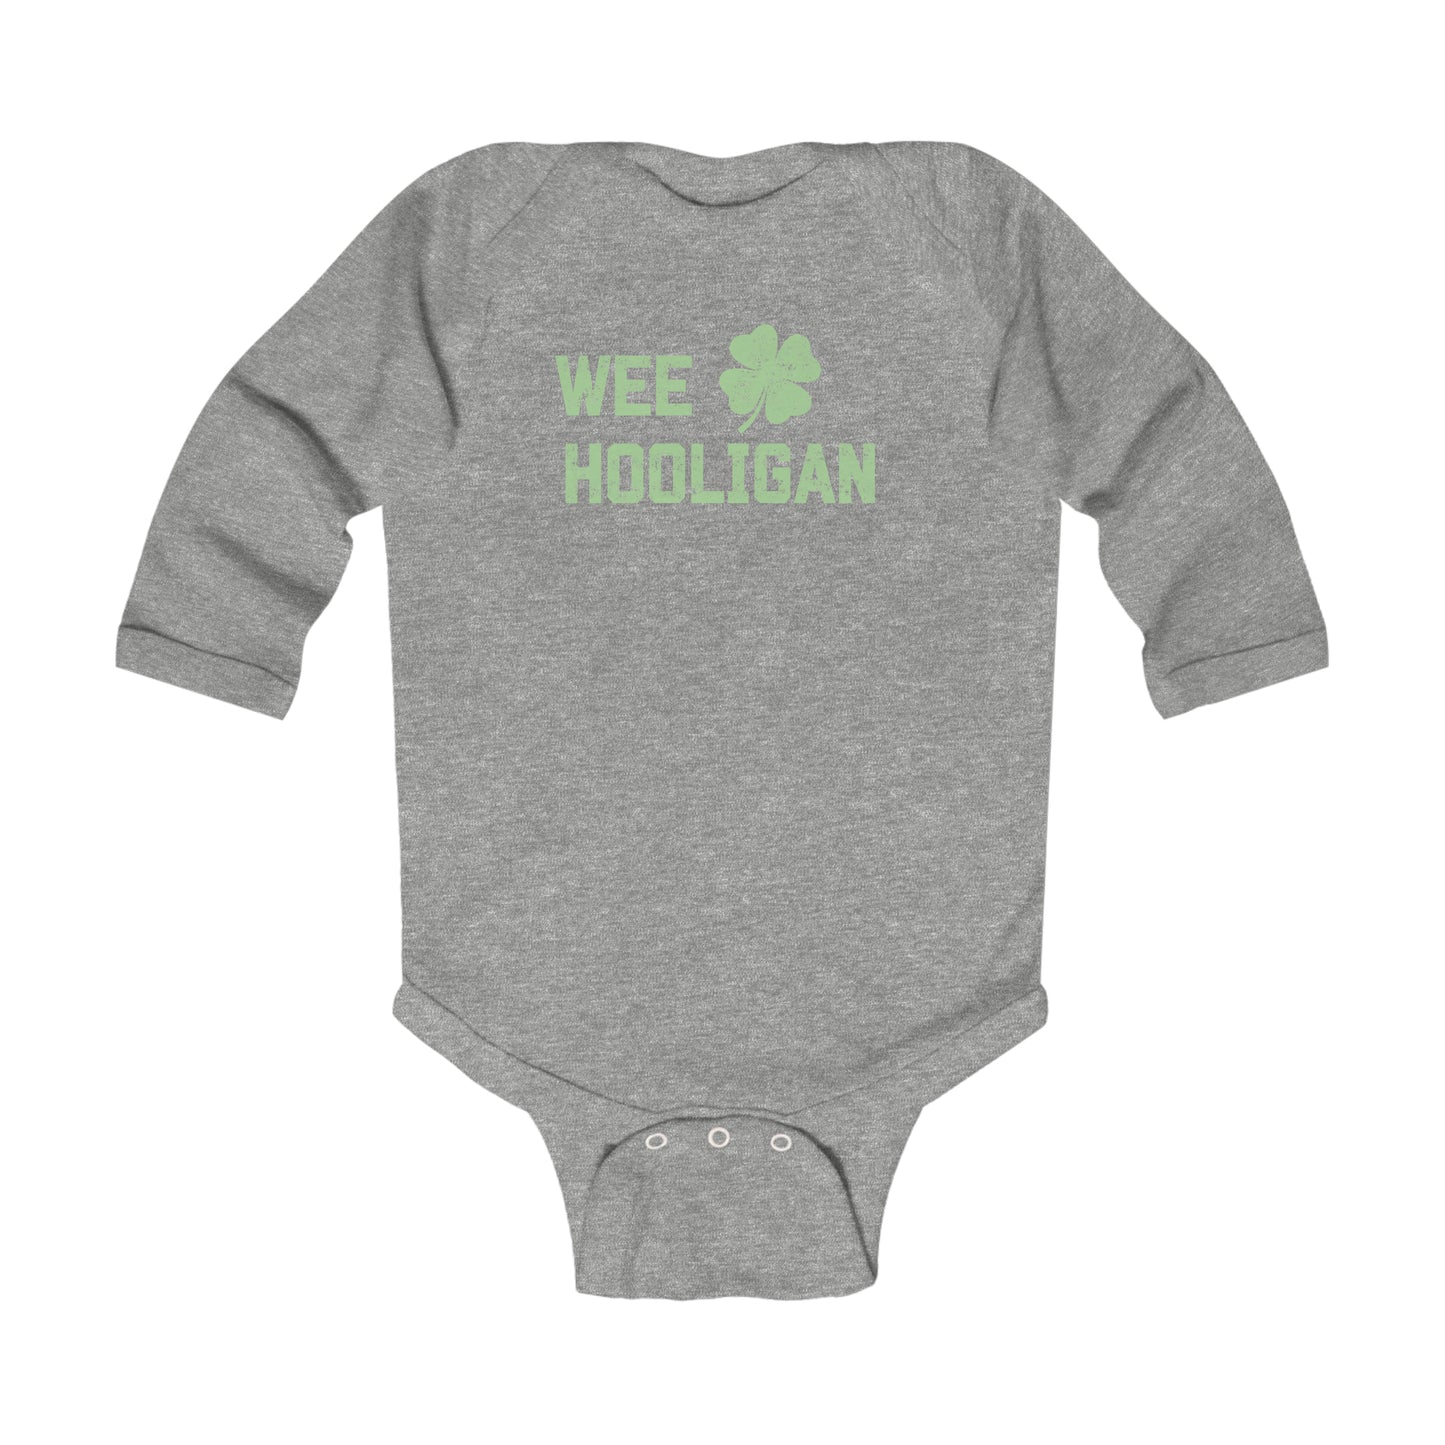 Wee Hooligan | St. Patrick's Day Baby Bodysuit | Gender-Neutral Long-Sleeve Baby BodySuit